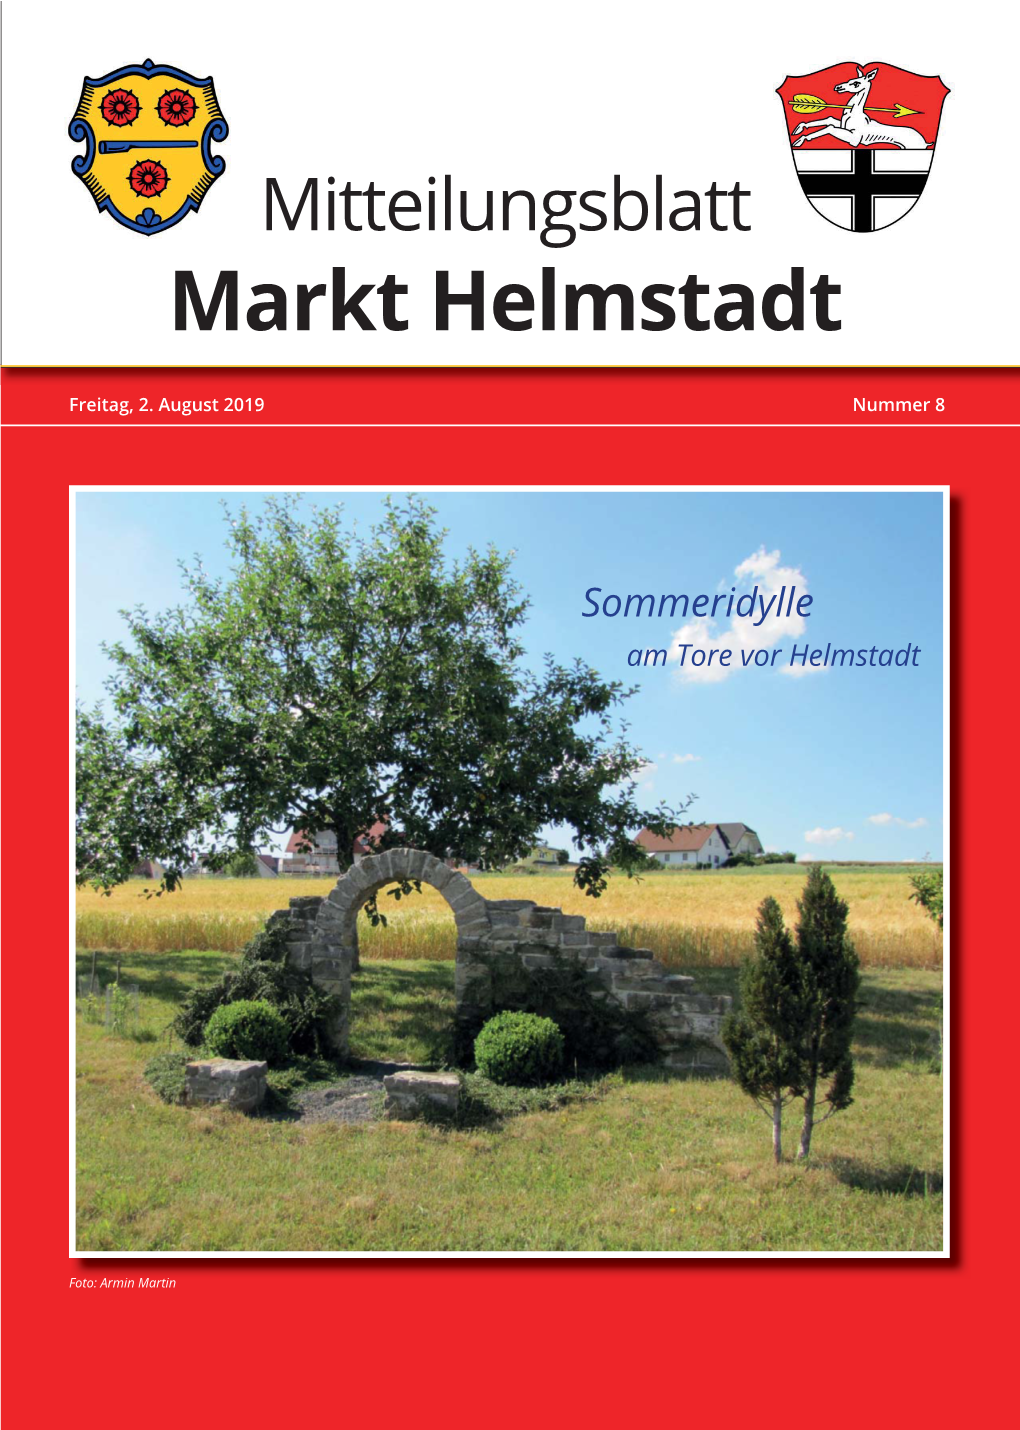 Mitteilungsblatt Helmstadt